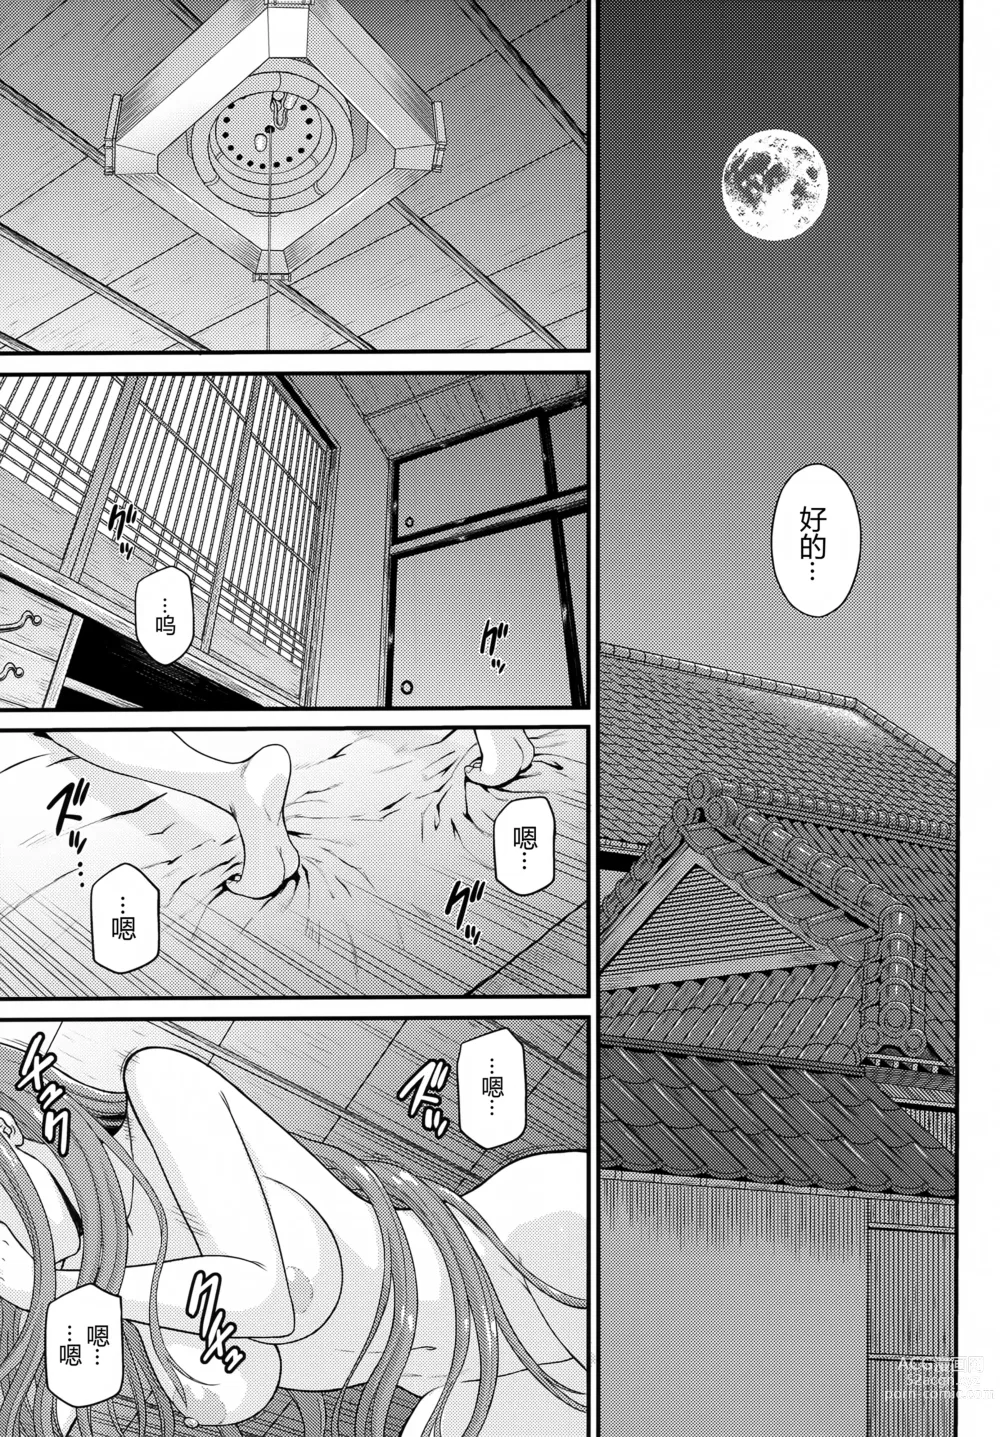 Page 7 of doujinshi Douka Kimi wa Shiawase ni